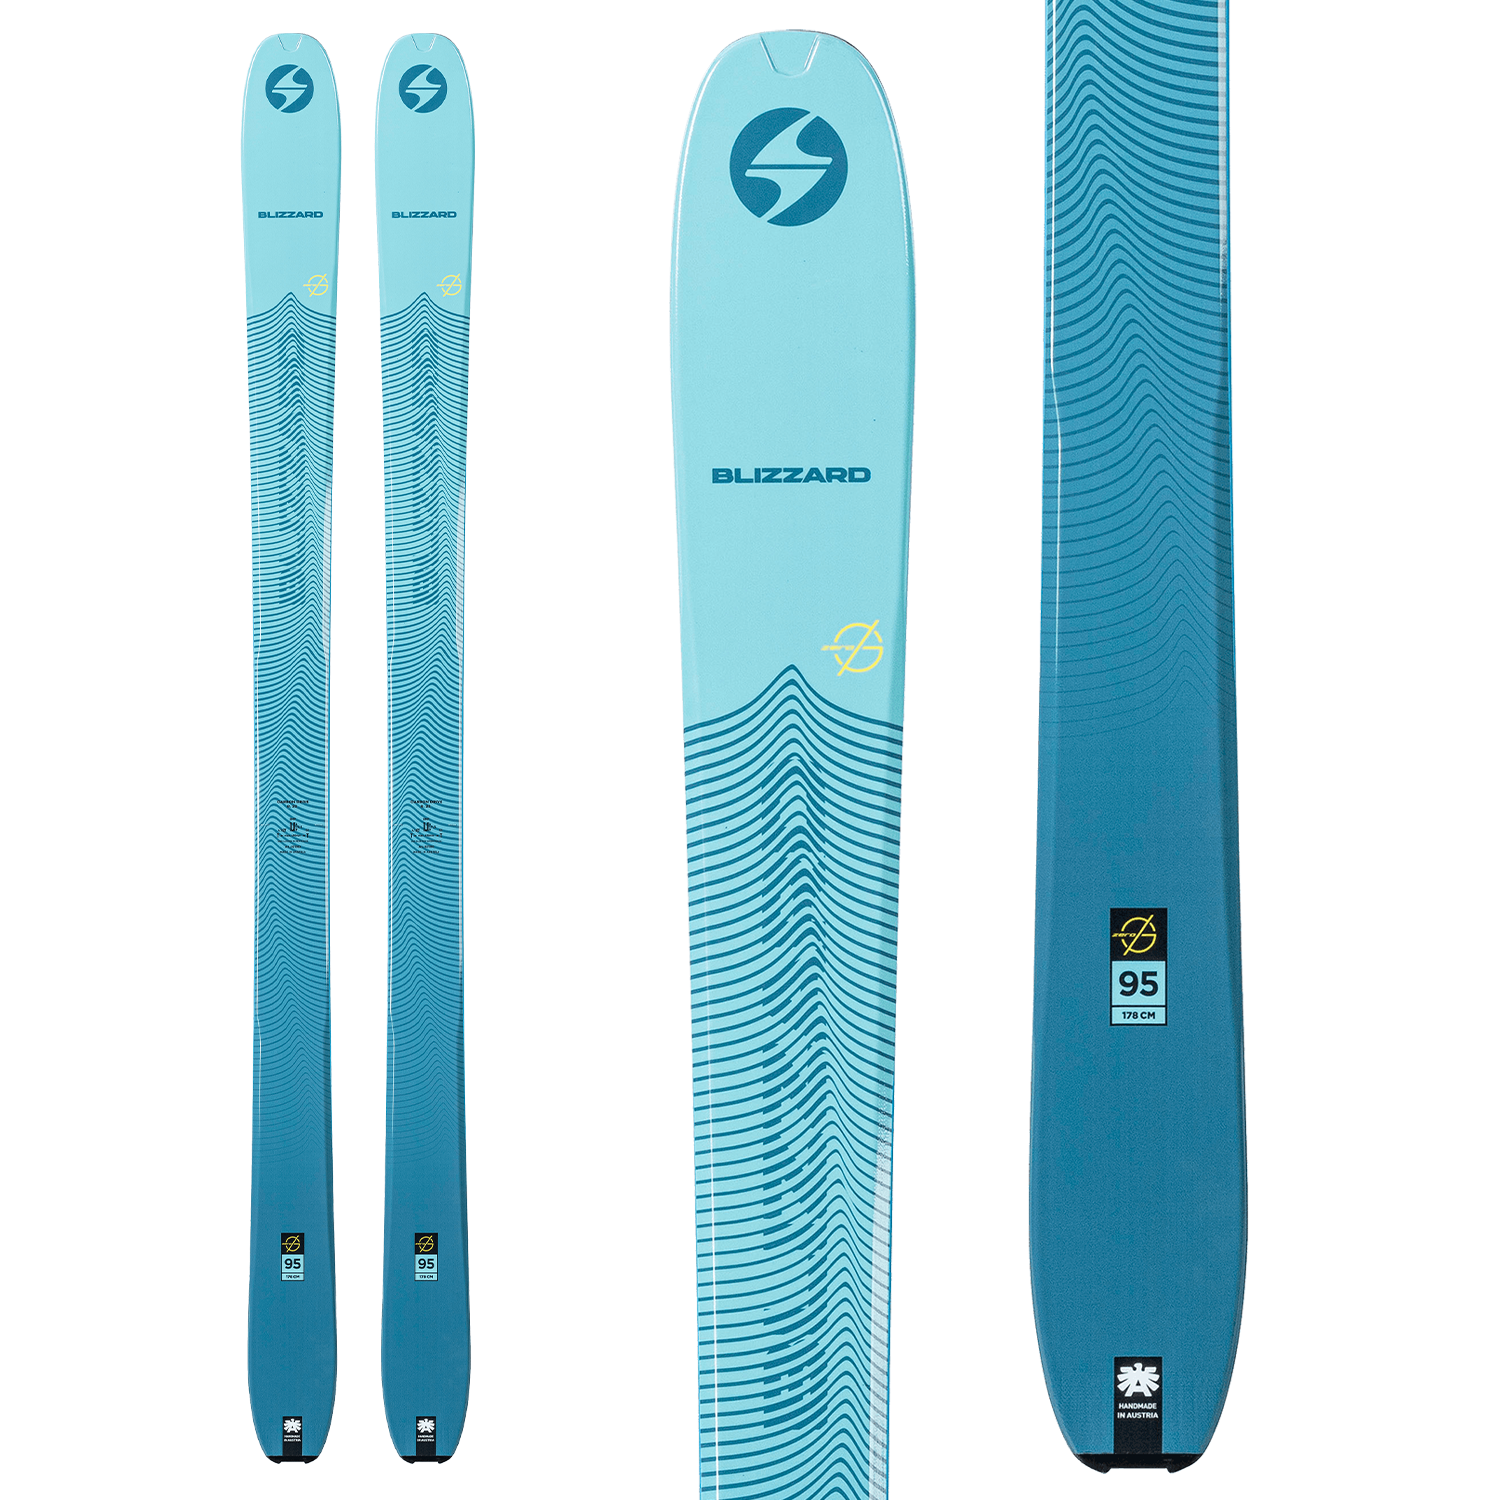 Blizzard Zero G 95 Skis 2020 | evo